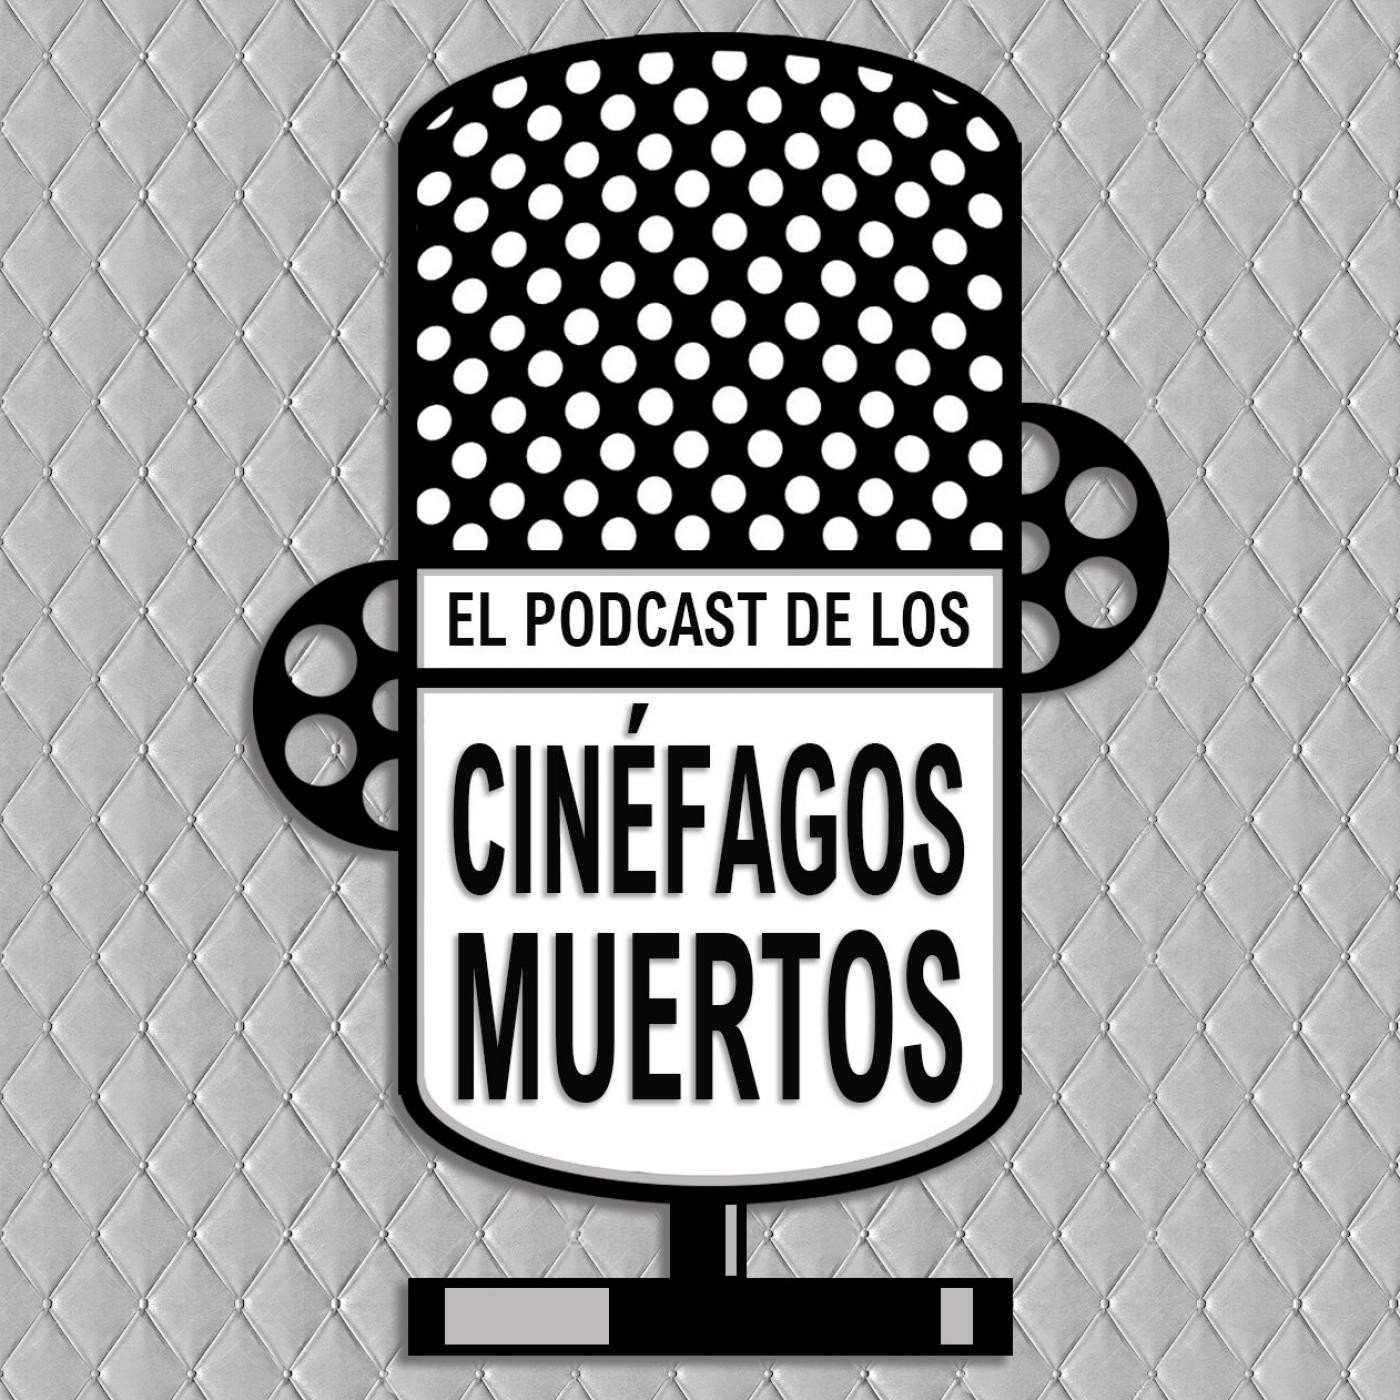 El podcast de los cinéfagos muertos